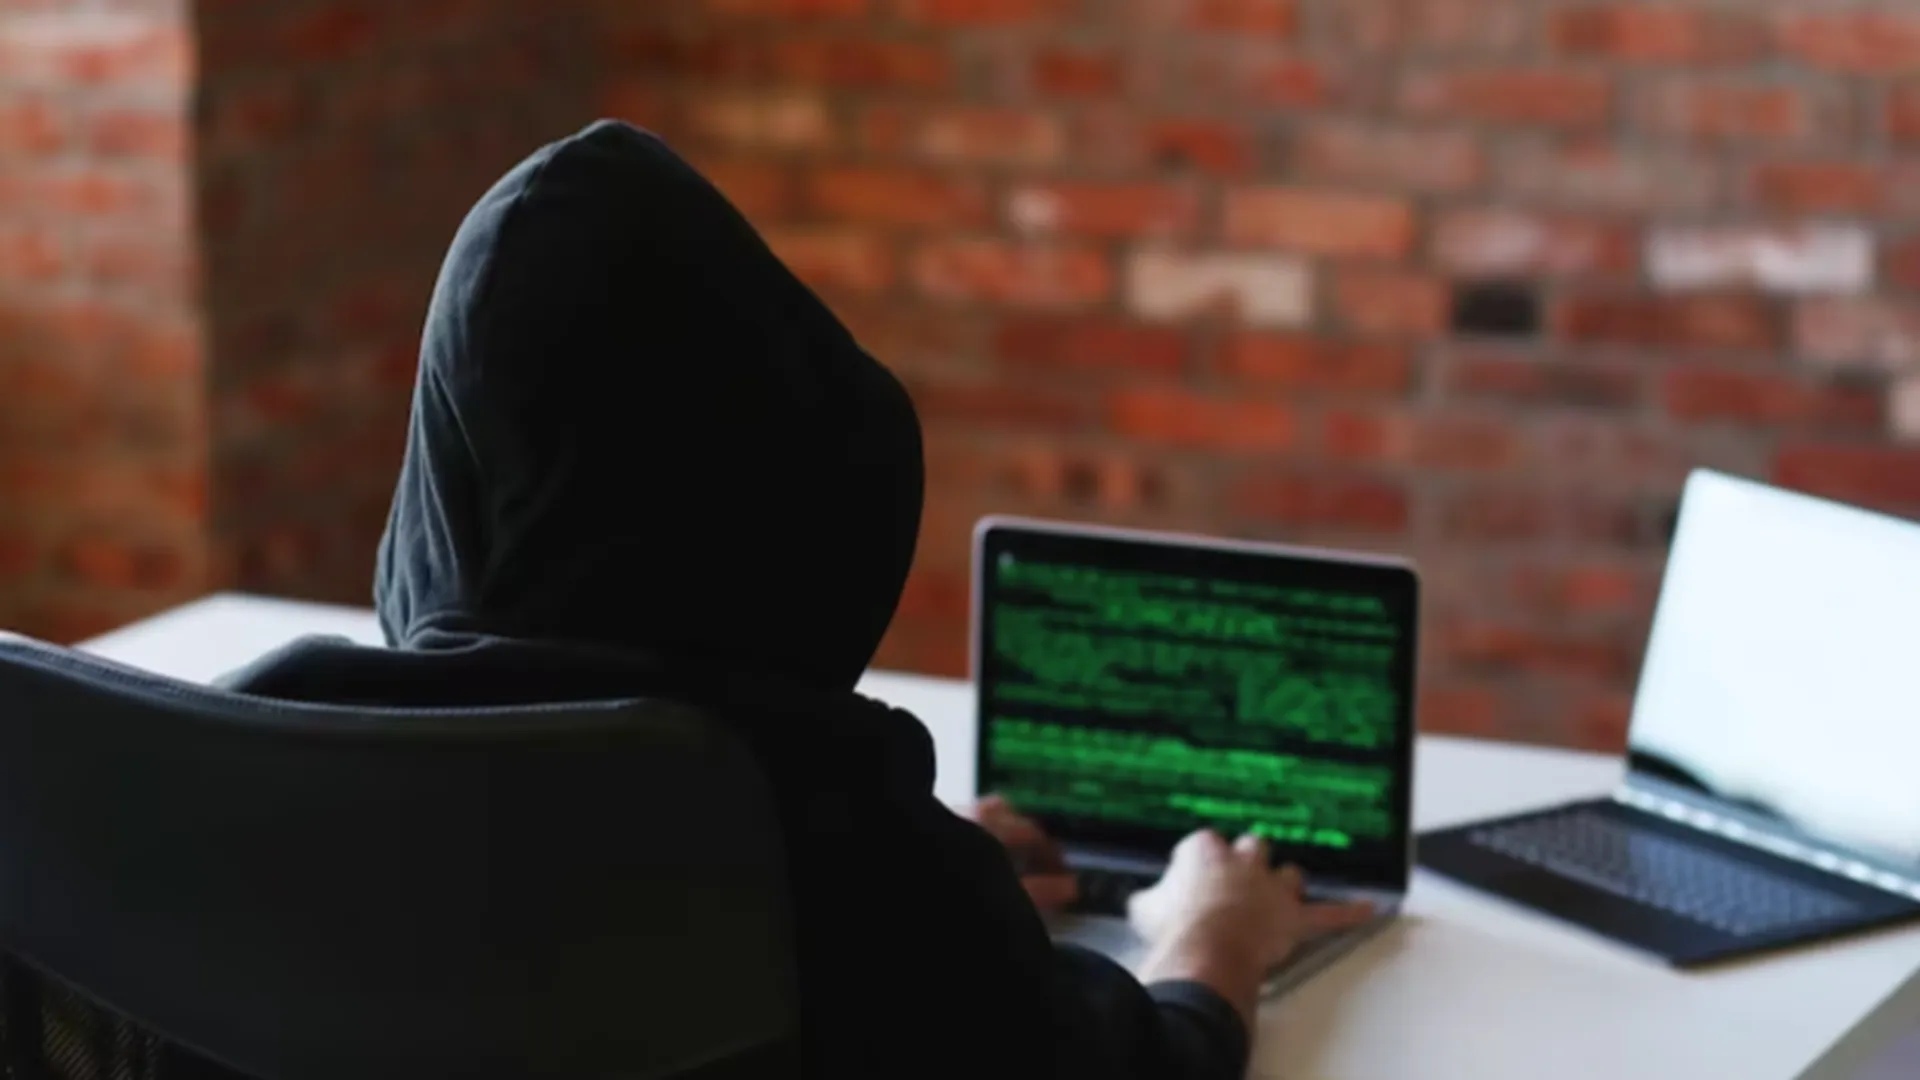 Айтишник рассказал, как защитить свои личные переписки от происков хакеров